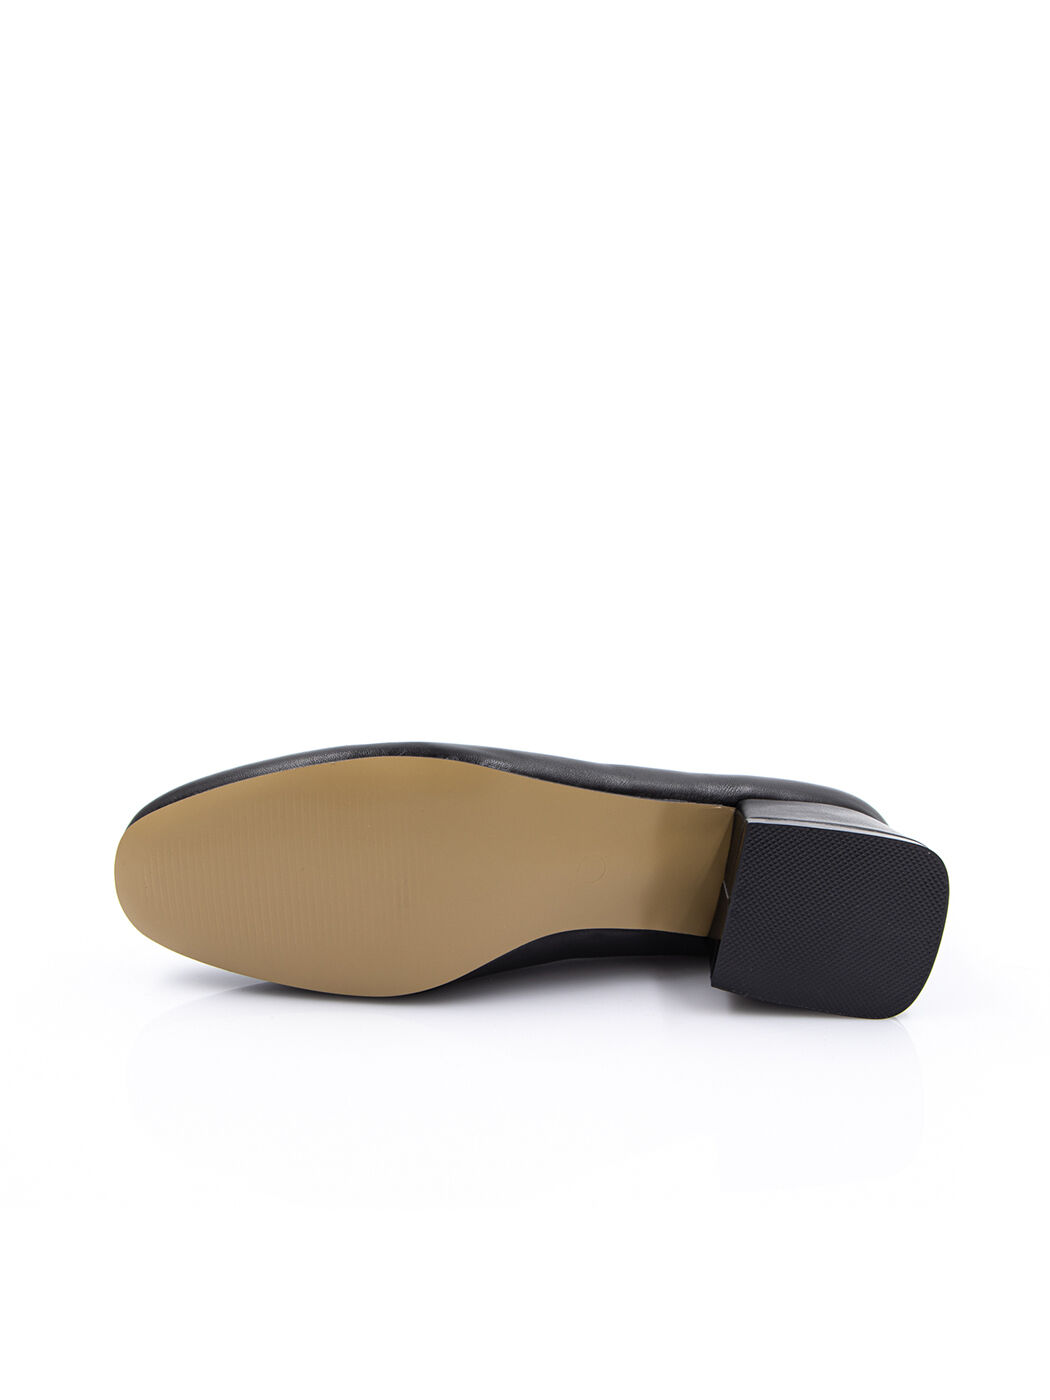 Туфли женские черные экокожа каблук устойчивый демисезон от производителя 5M вид 0